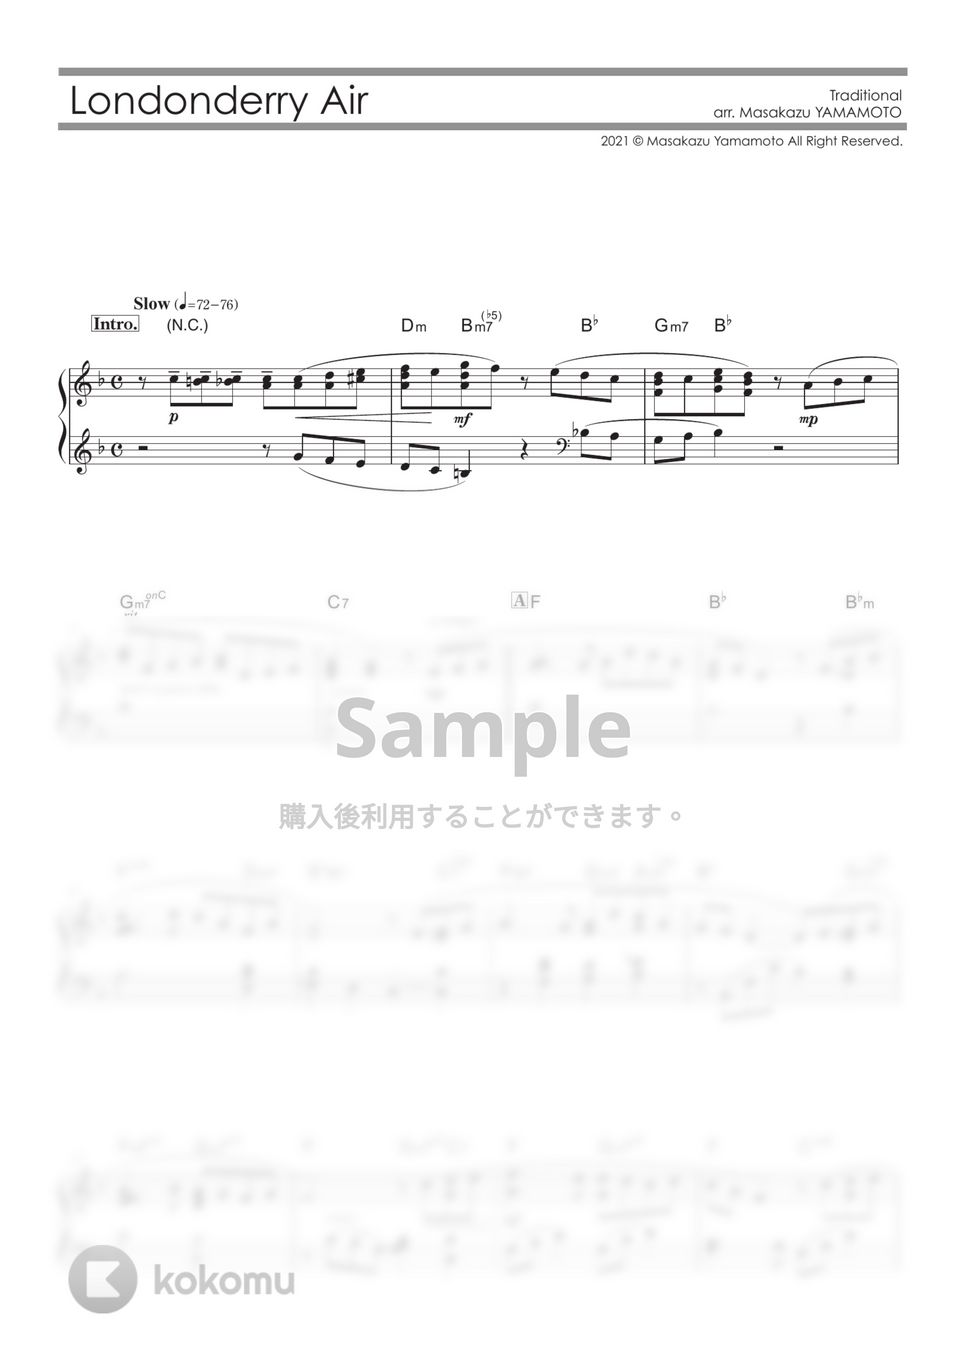 ロンドンデリーの歌（ダニー・ボーイ） (ピアノ中級) by 山本雅一